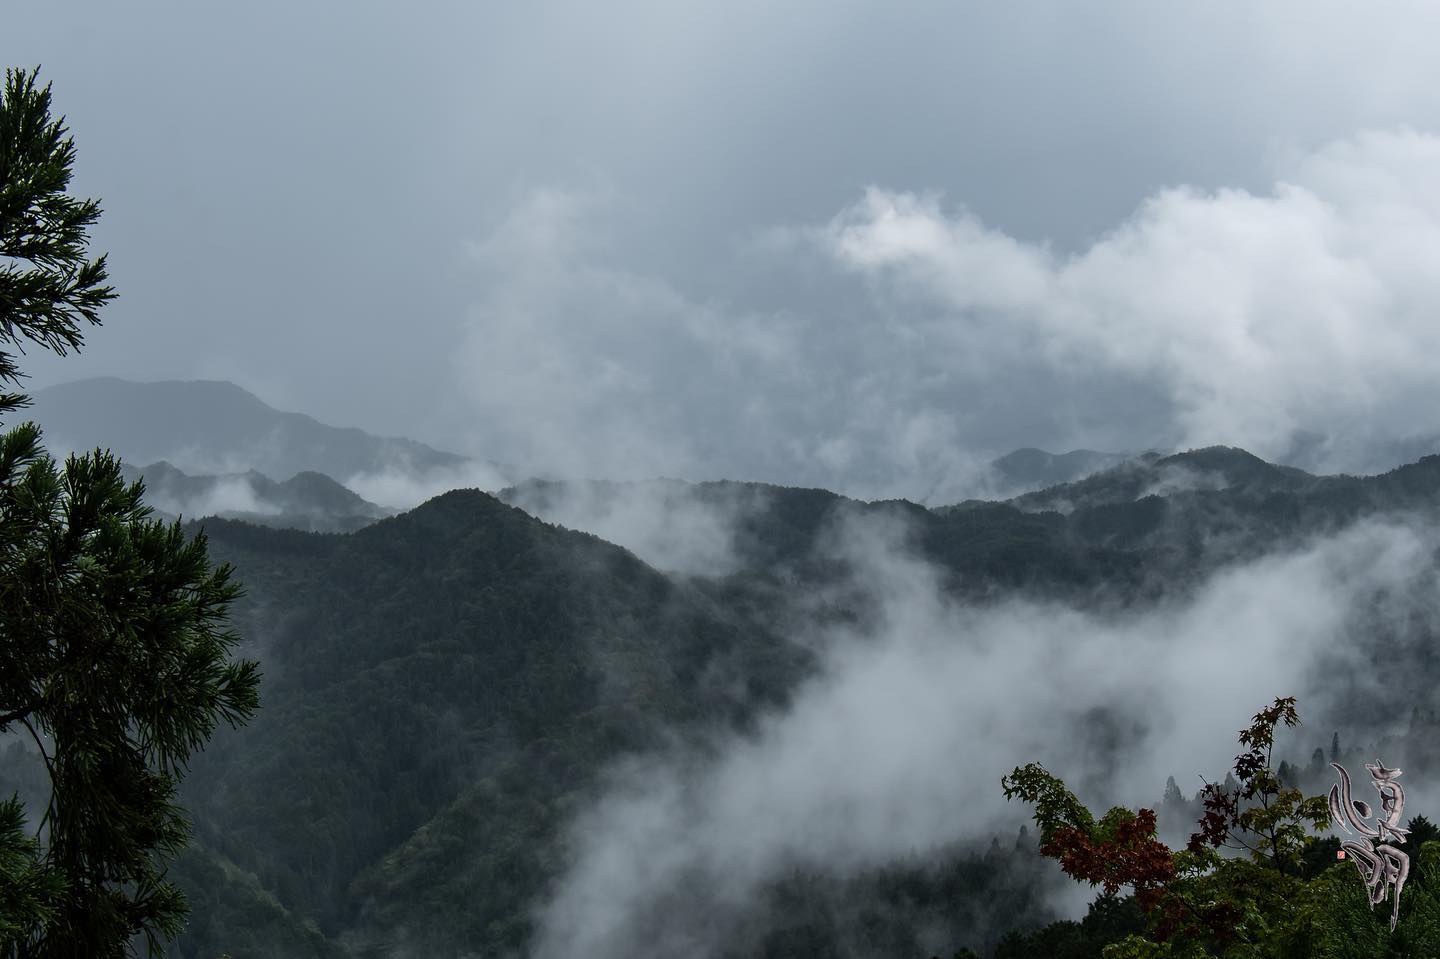 雨の日の大門付近からの眺望高野山に着いた途端に雷鳴と共に大雨。しばらく撮影を諦めて大門に行くと、山々の素晴らしい眺望が見れました。 – from Instagram